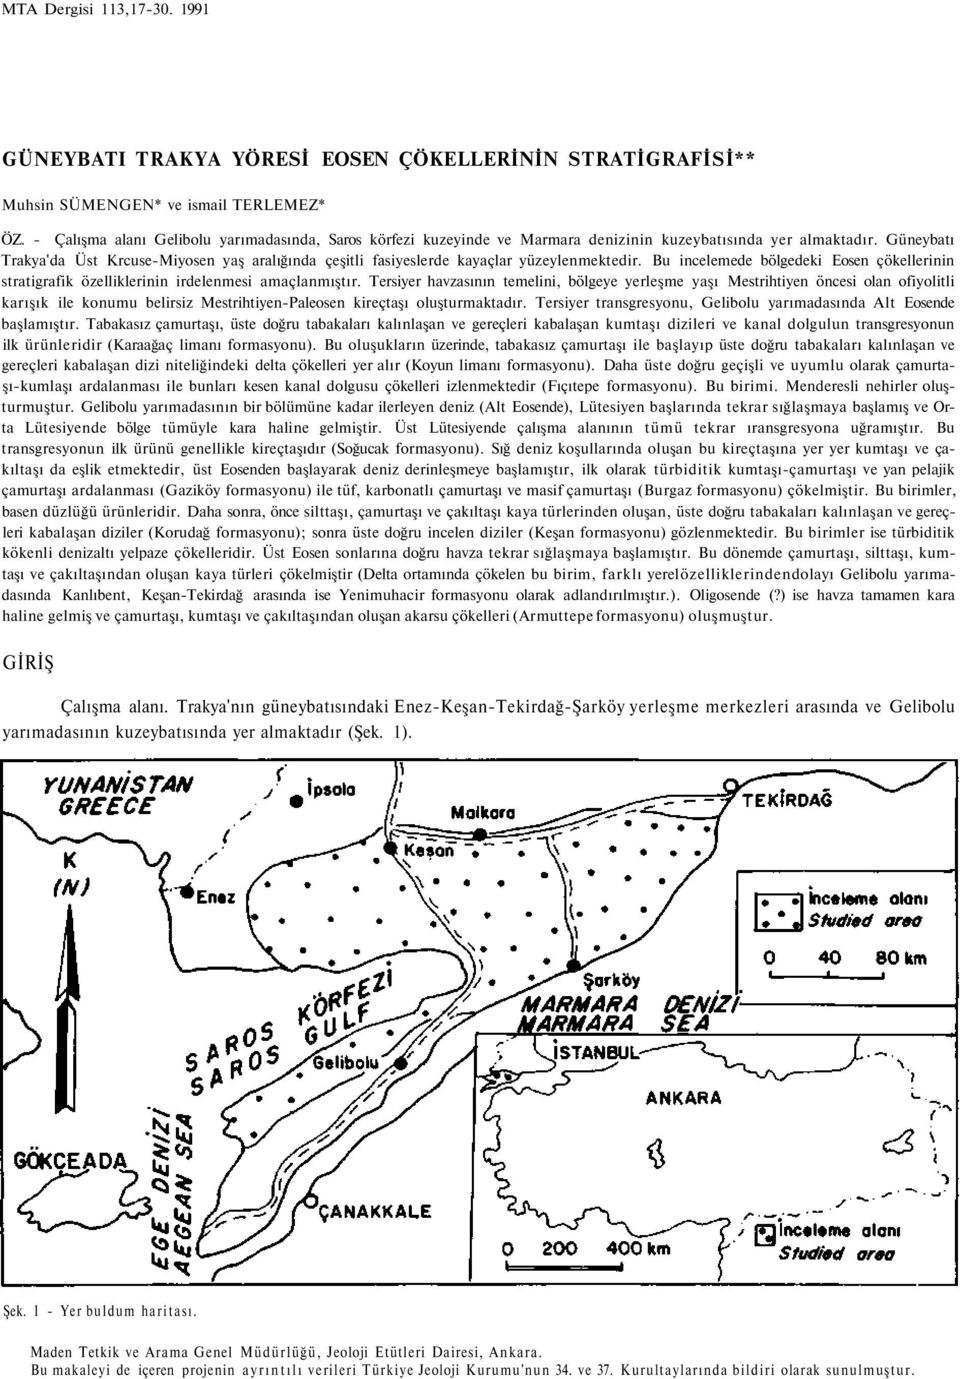 Güneybatı Trakya'da Üst Krcuse-Miyosen yaş aralığında çeşitli fasiyeslerde kayaçlar yüzeylenmektedir. Bu incelemede bölgedeki Eosen çökellerinin stratigrafik özelliklerinin irdelenmesi amaçlanmıştır.